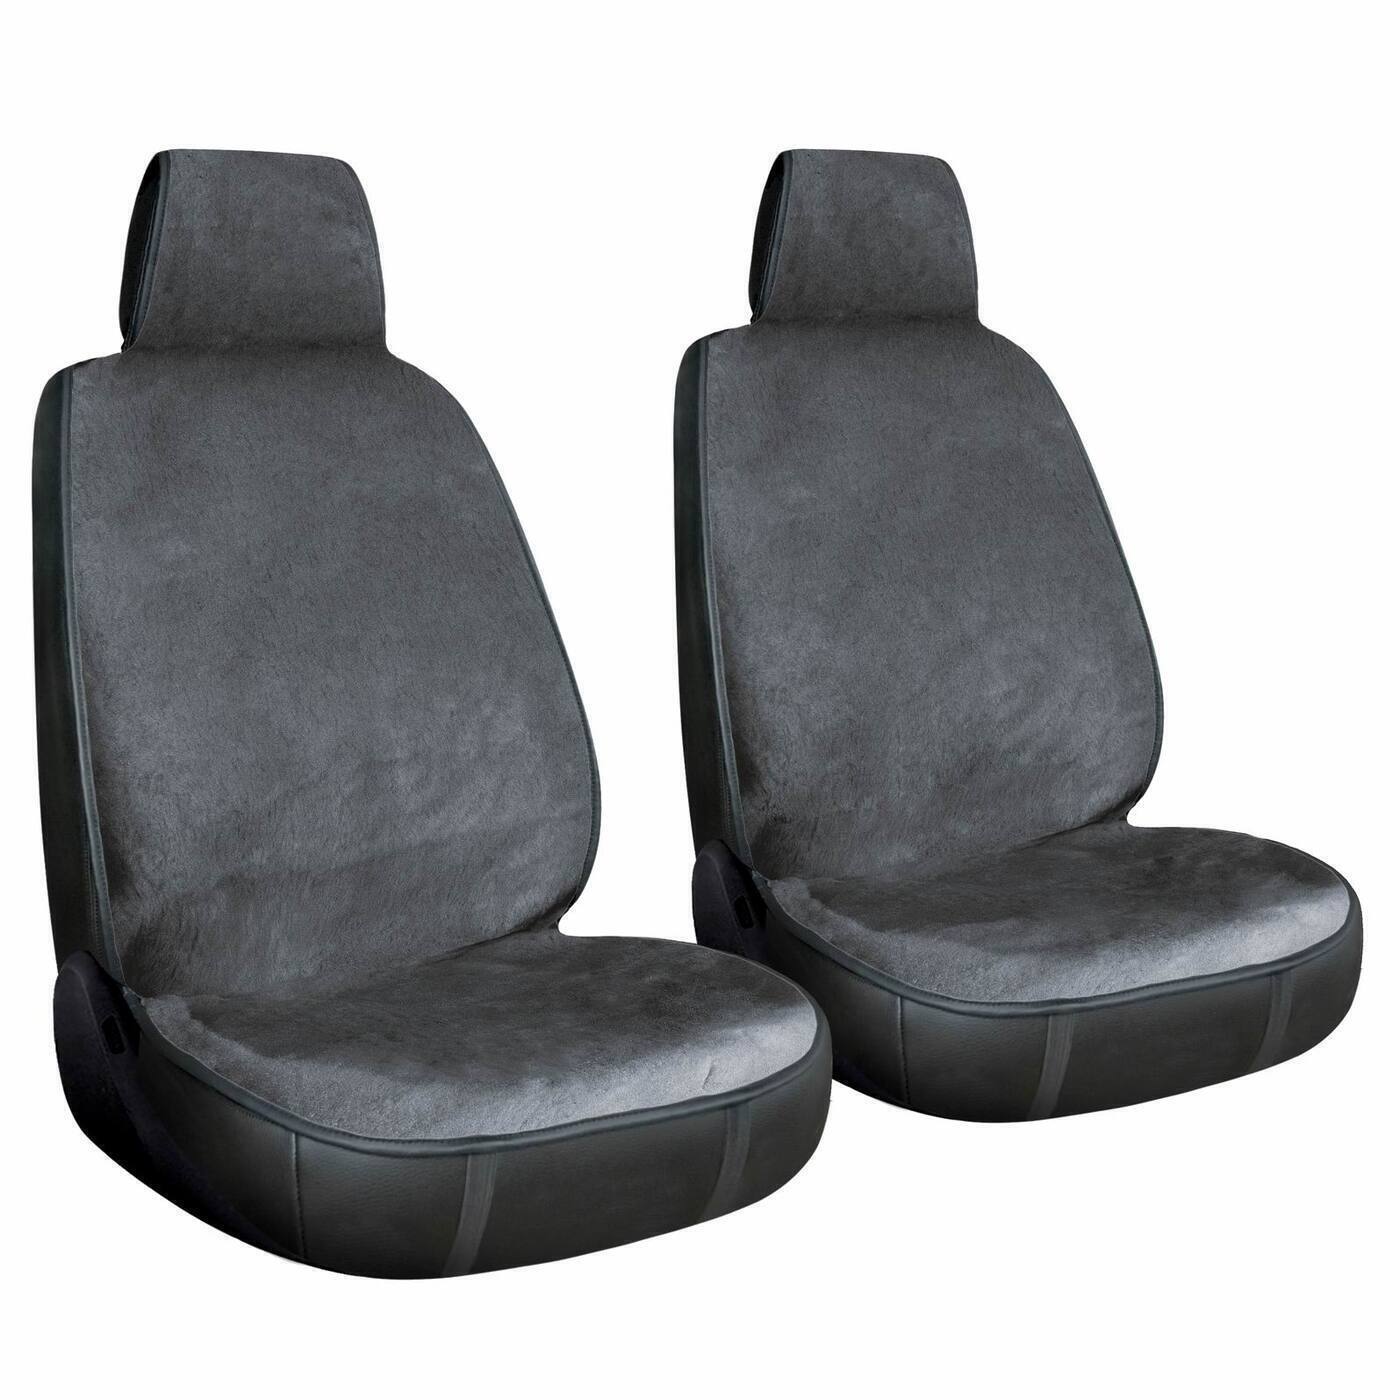 фото Накидка на сиденье автомобиля / чехлы для автомобильных сидений меховые серый (2 шт.) a2dm